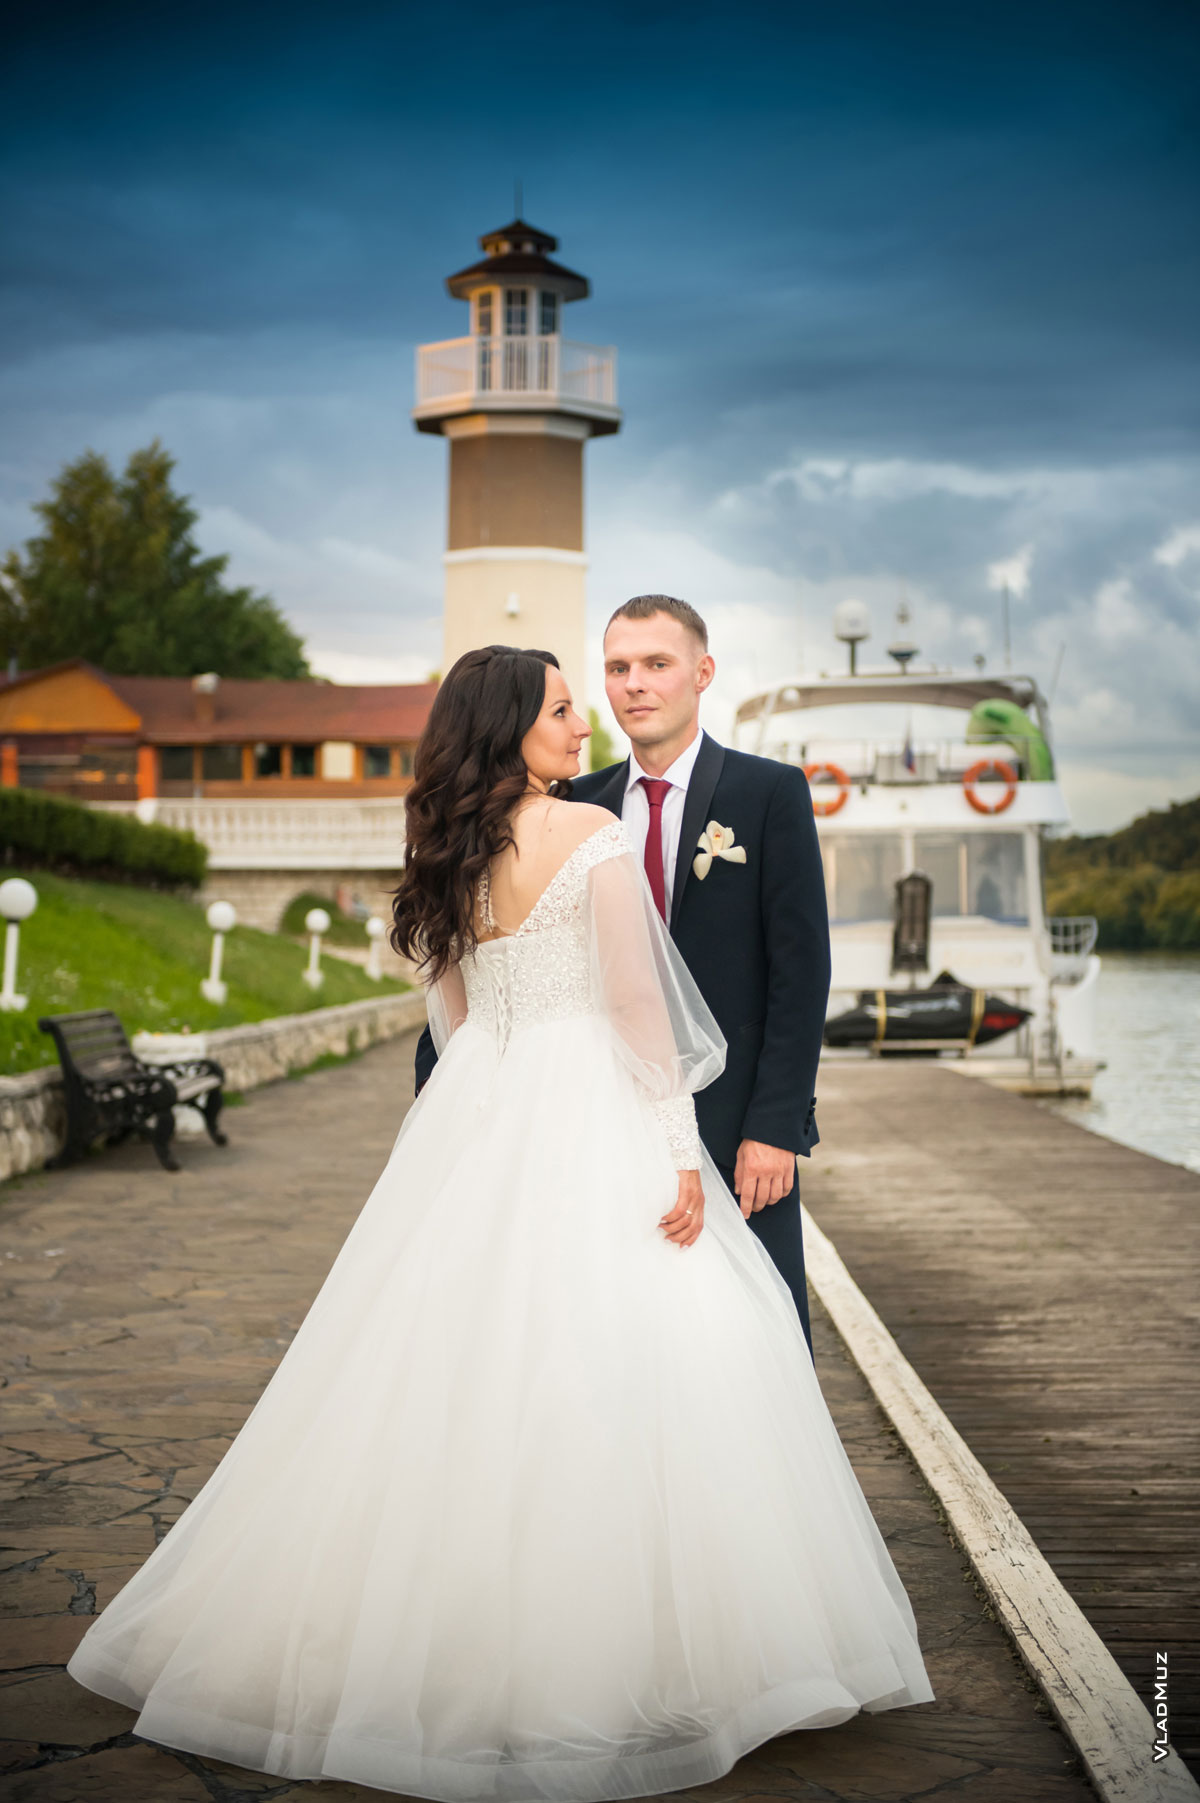 Фото свадебной пары в полный рост на фоне маяка комплекса «Белый берег»: жених смотрит в кадр, невеста — на жениха